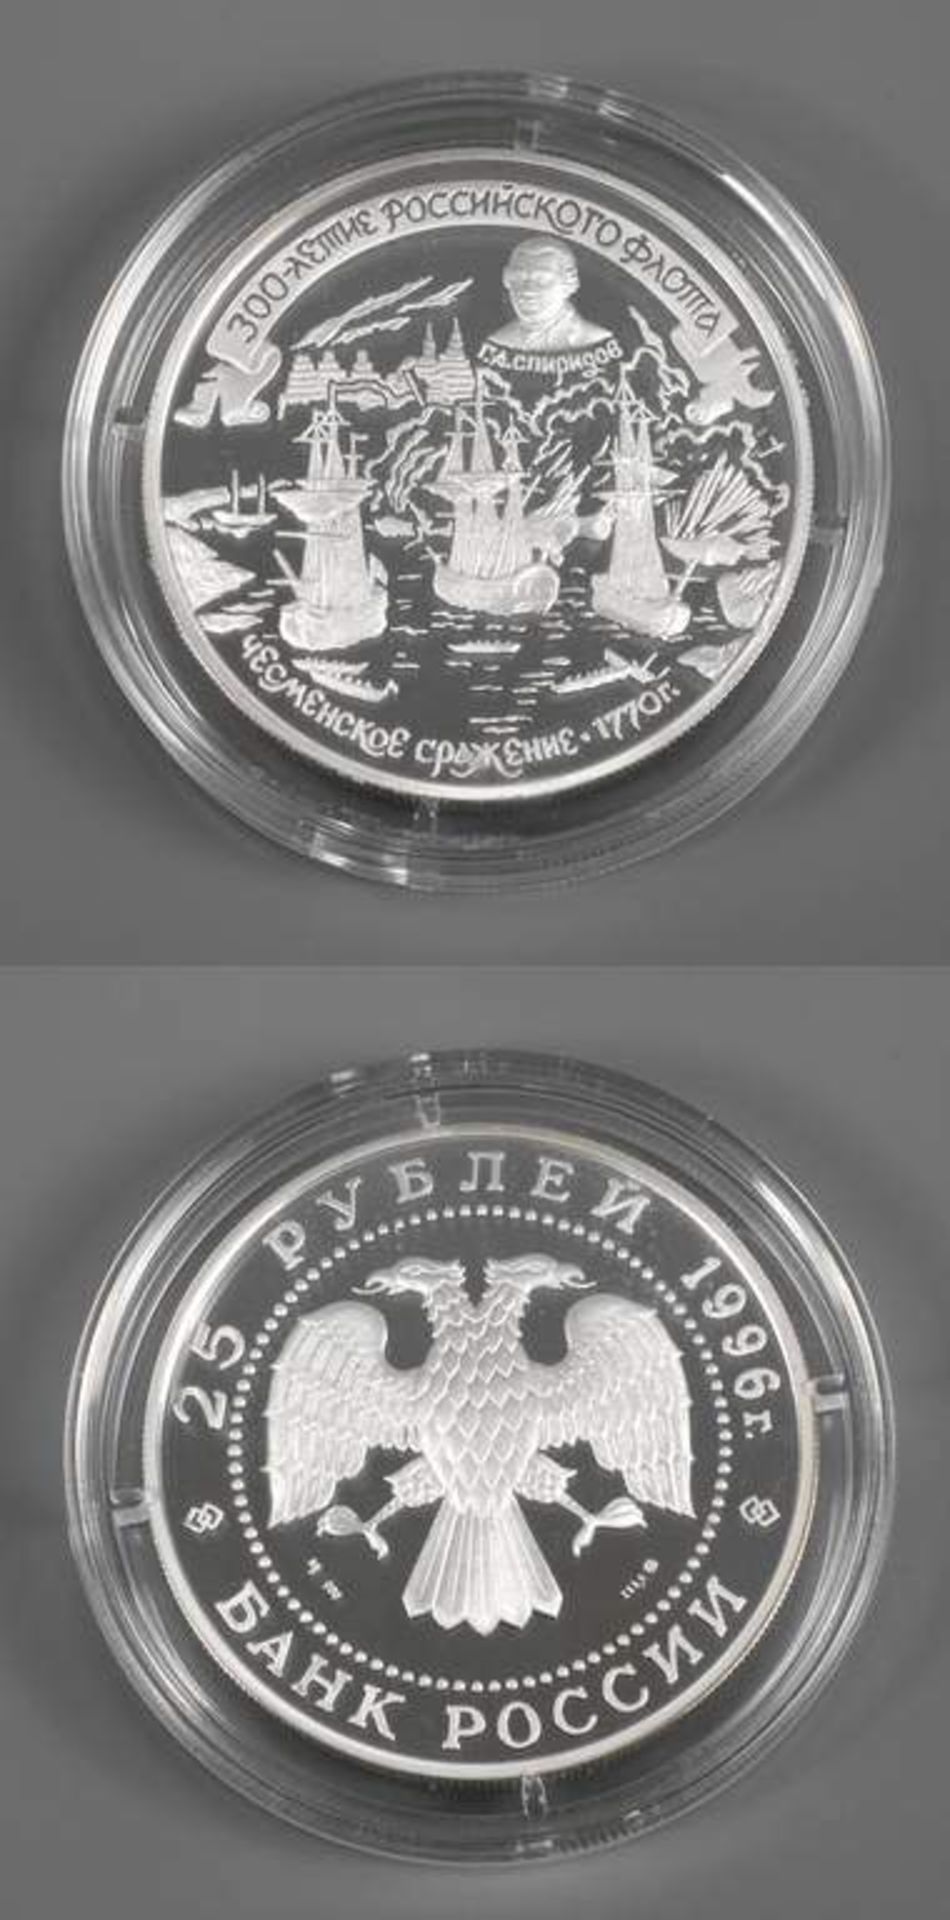 Silbermünze Russland 25 Rubel 1996 à 5 Unzen, in Silber (900), 300 Jahre russische Flotte, D 60